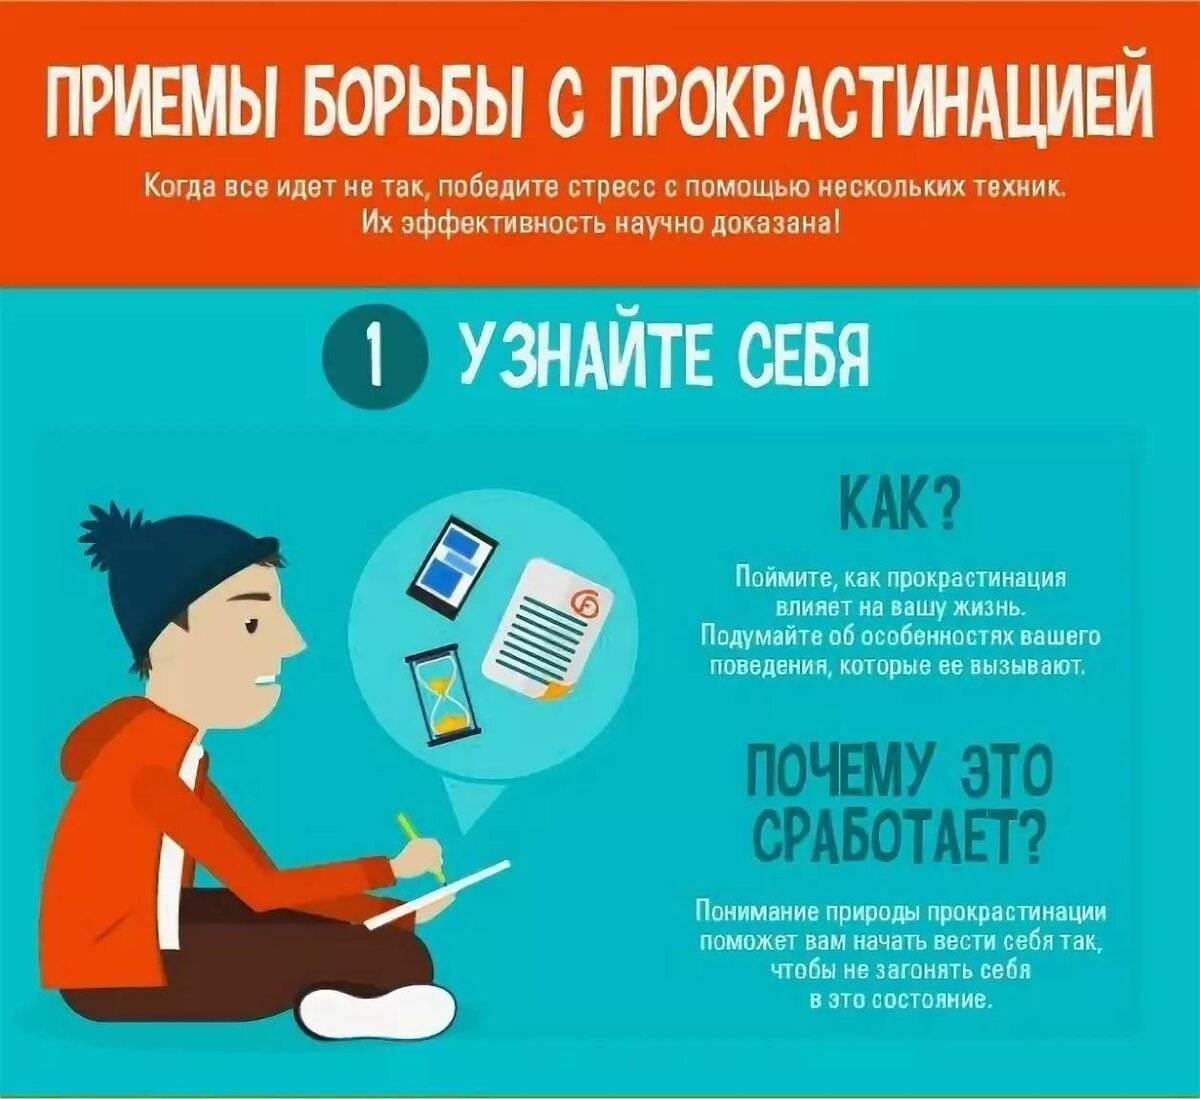 Прокрастинация: что это такое простыми словами и что значит прокрастинировать? | kadrof.ru